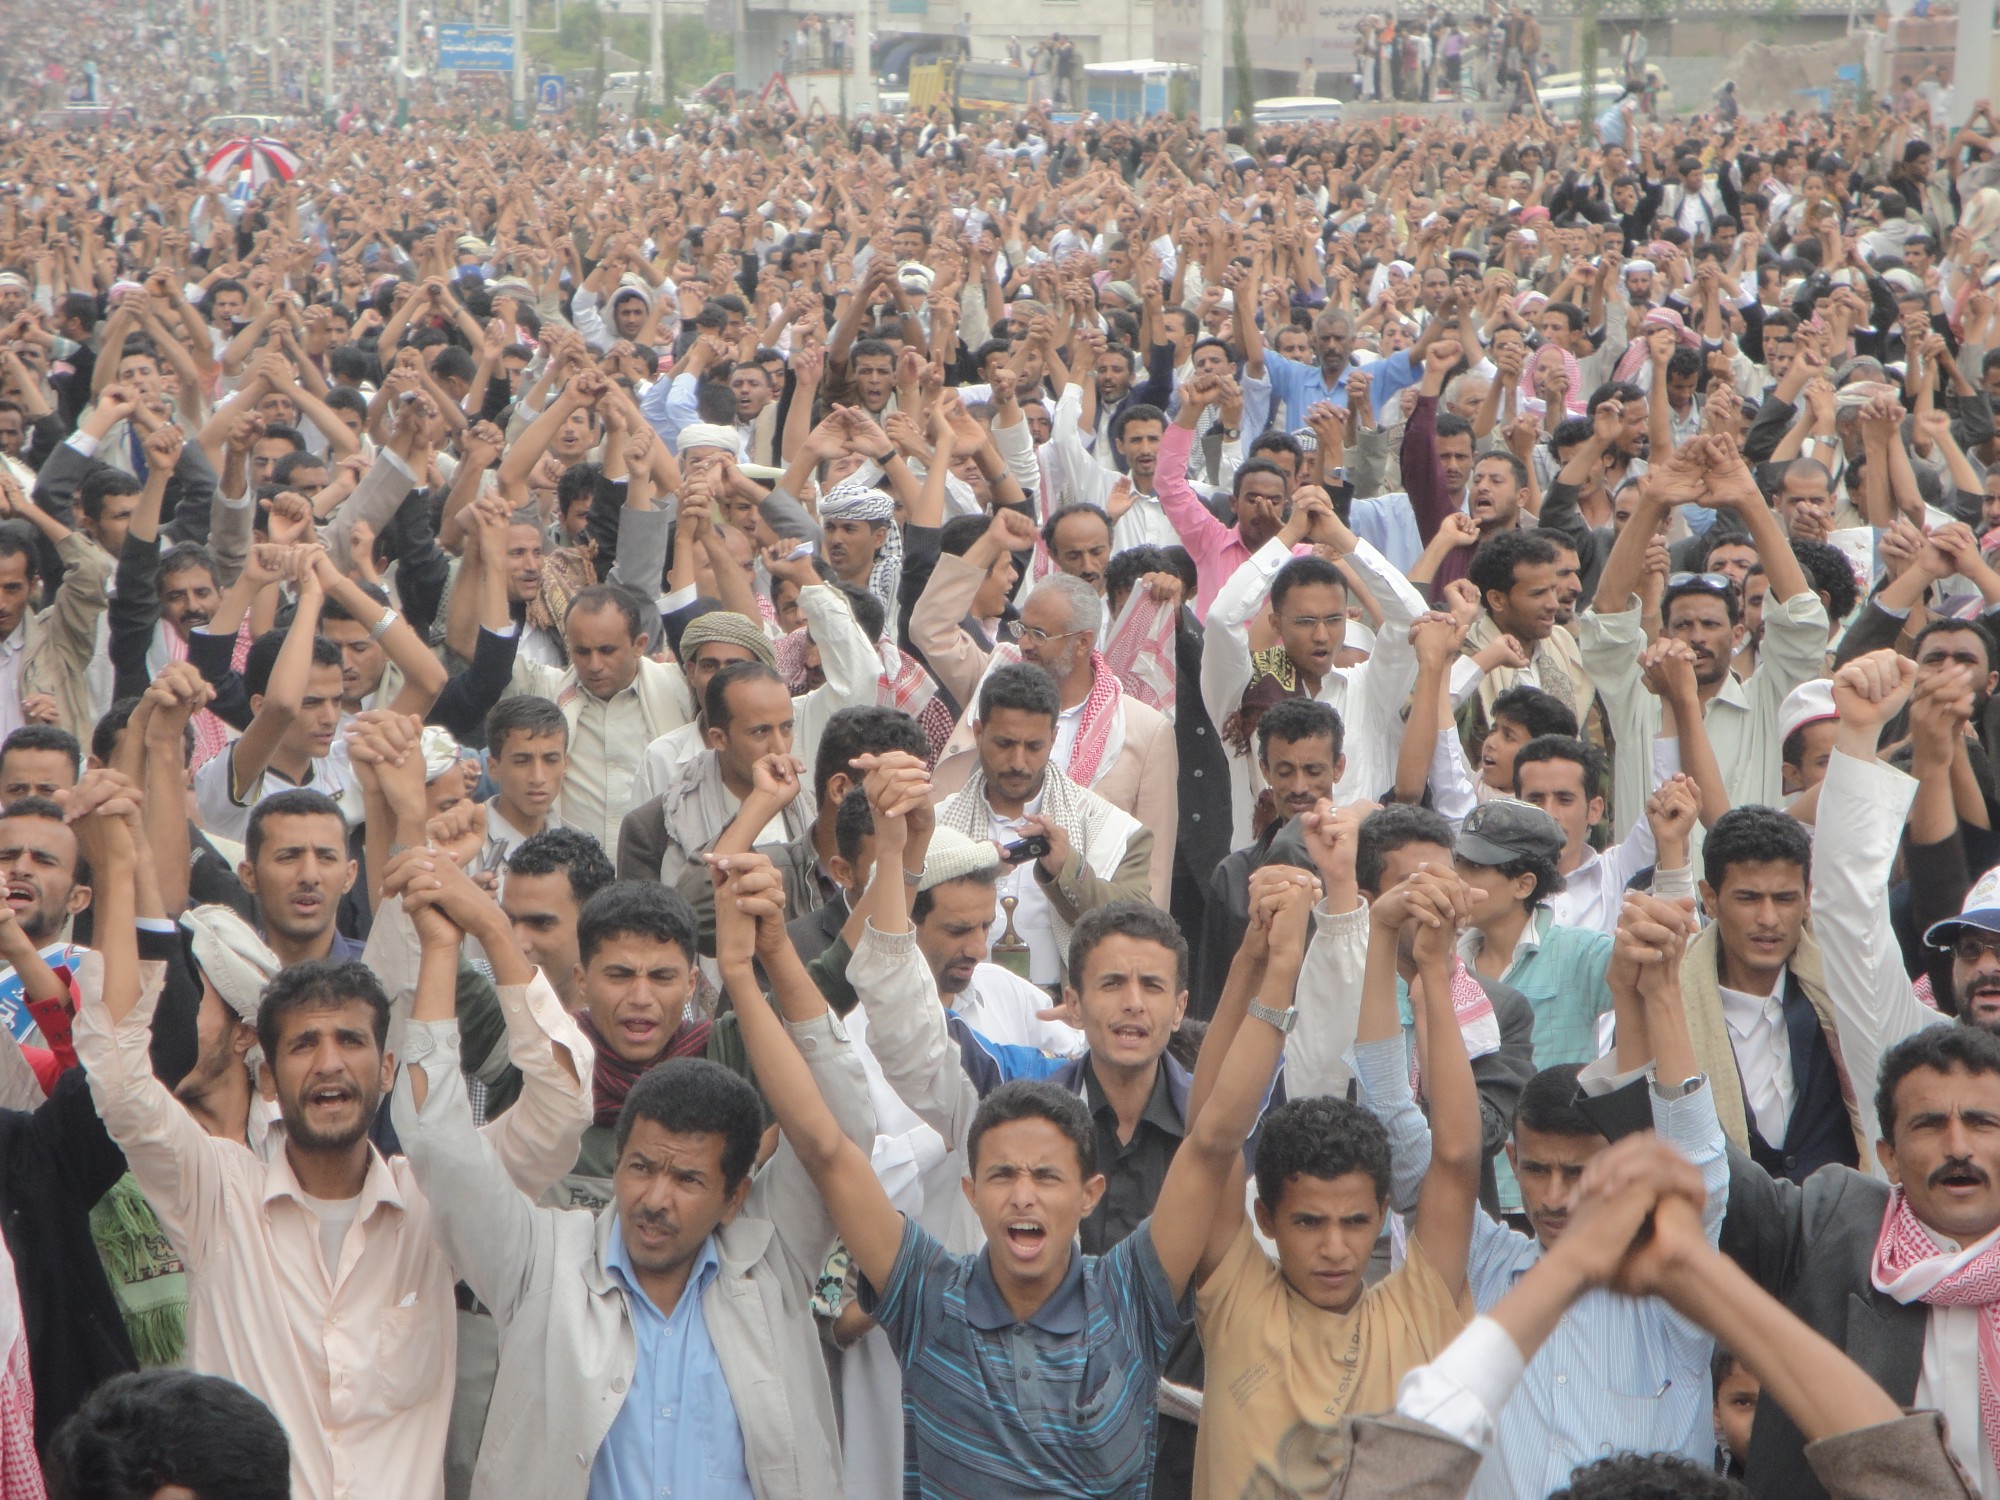  ما هو الحل أمام الثوار في ظل الغياب النهائي المحتمل لصالح خارج اليمن؟